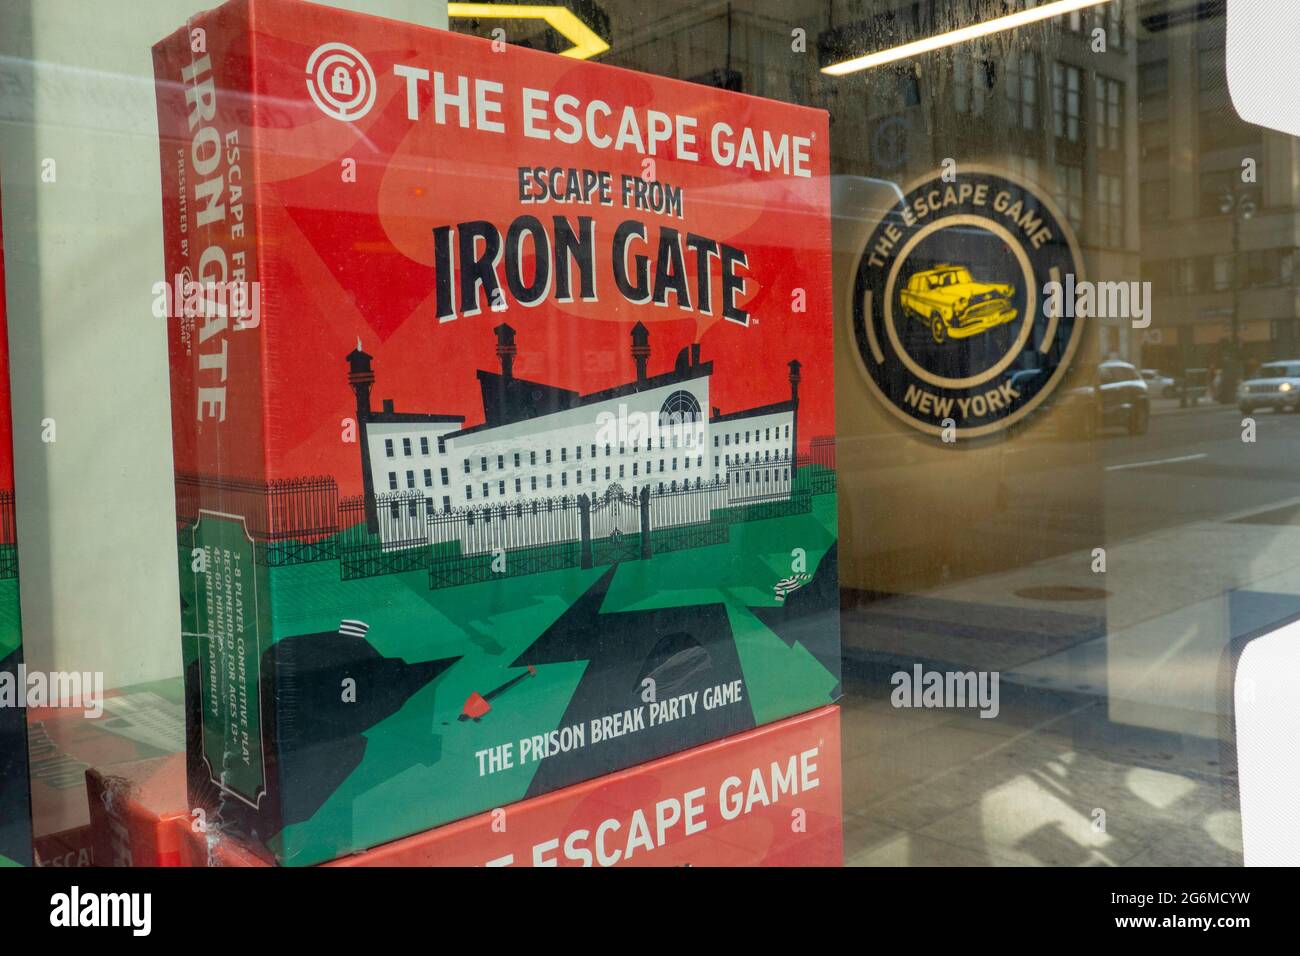 The Escape Game: Escape from Iron Gate